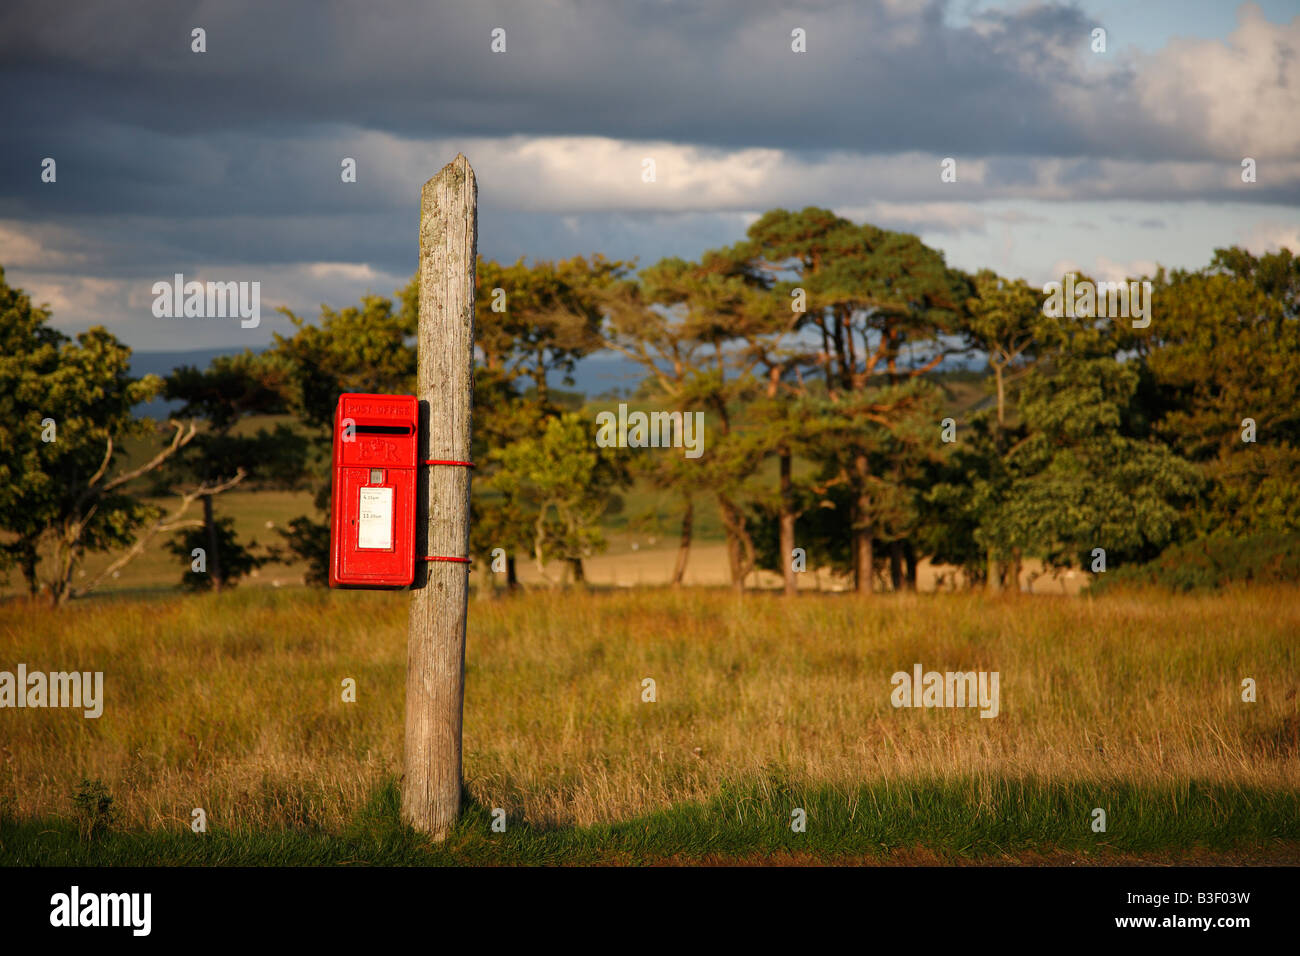 Post box rouge sur un poteau, dans la campagne, éclairé par la lumière du soir d'or, Calbeck, Cumbria, Angleterre, Royaume-Uni. Banque D'Images